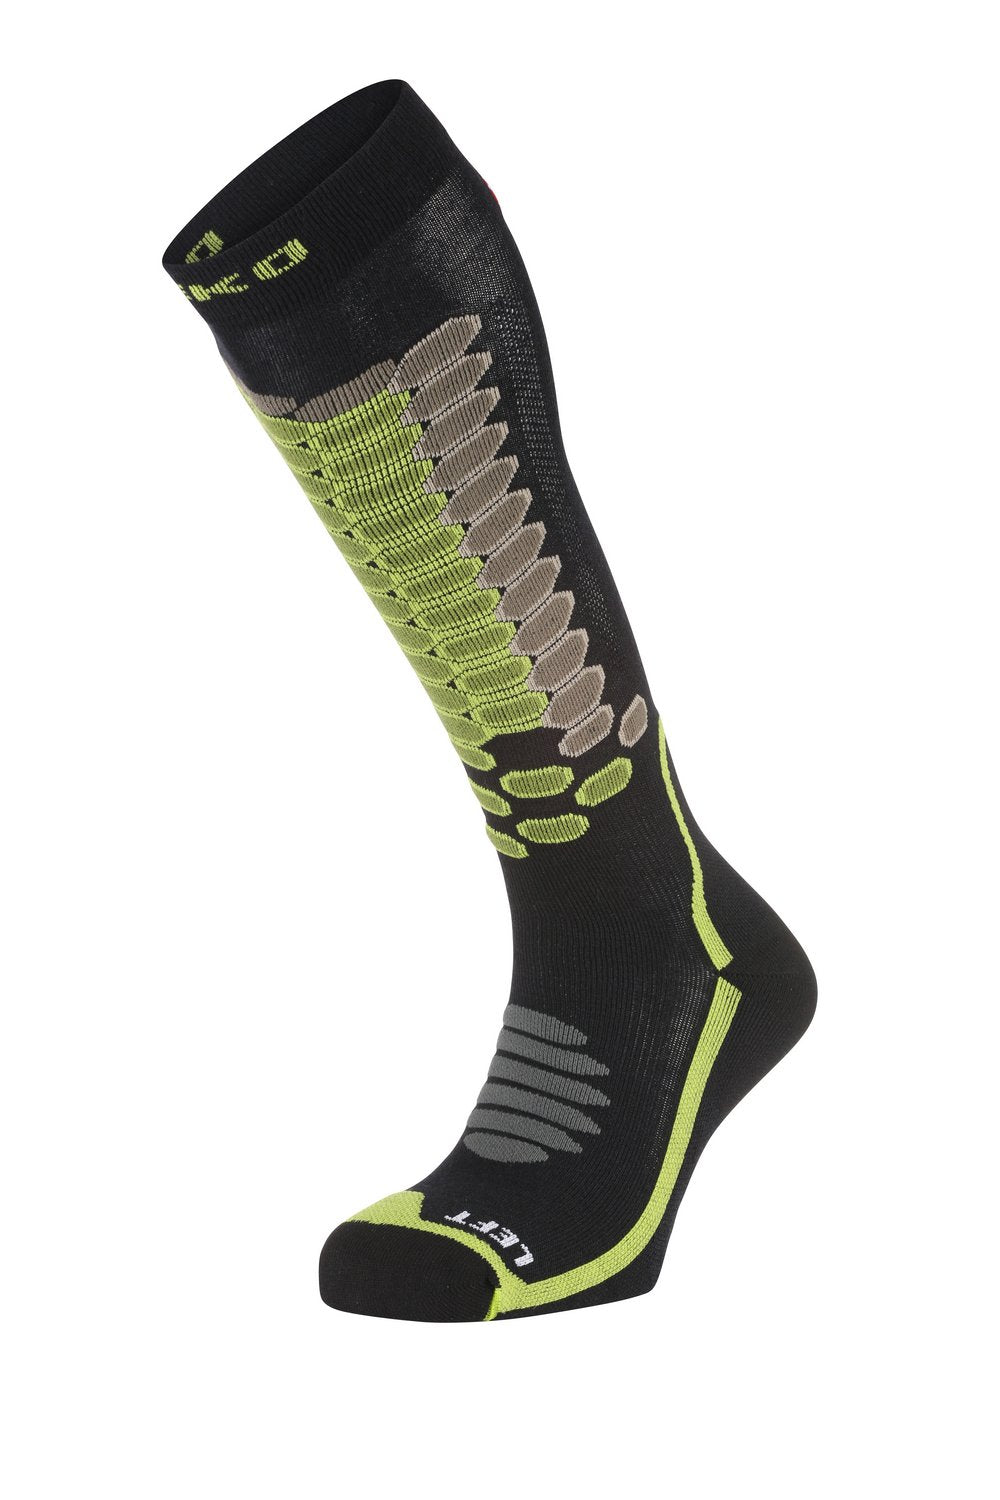 34% off on FlexFit Zip Up Compression Socks